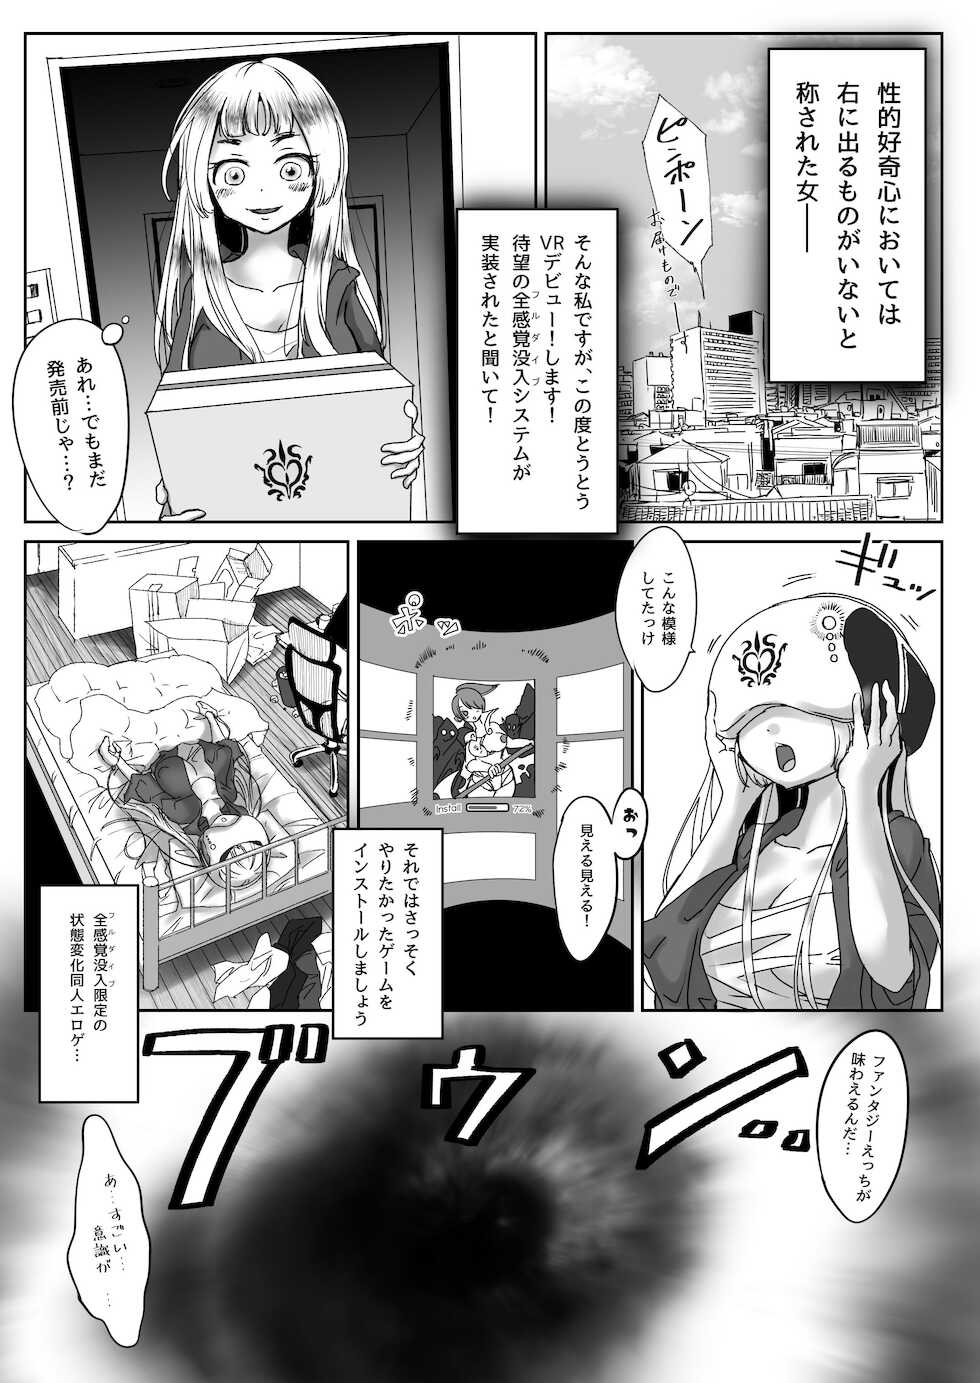 [Shimanami (Archipelago)] Miowaru made Derarenai Joutai Henka Doujin Eroge no Kaisou Heya [Digital] - Page 2